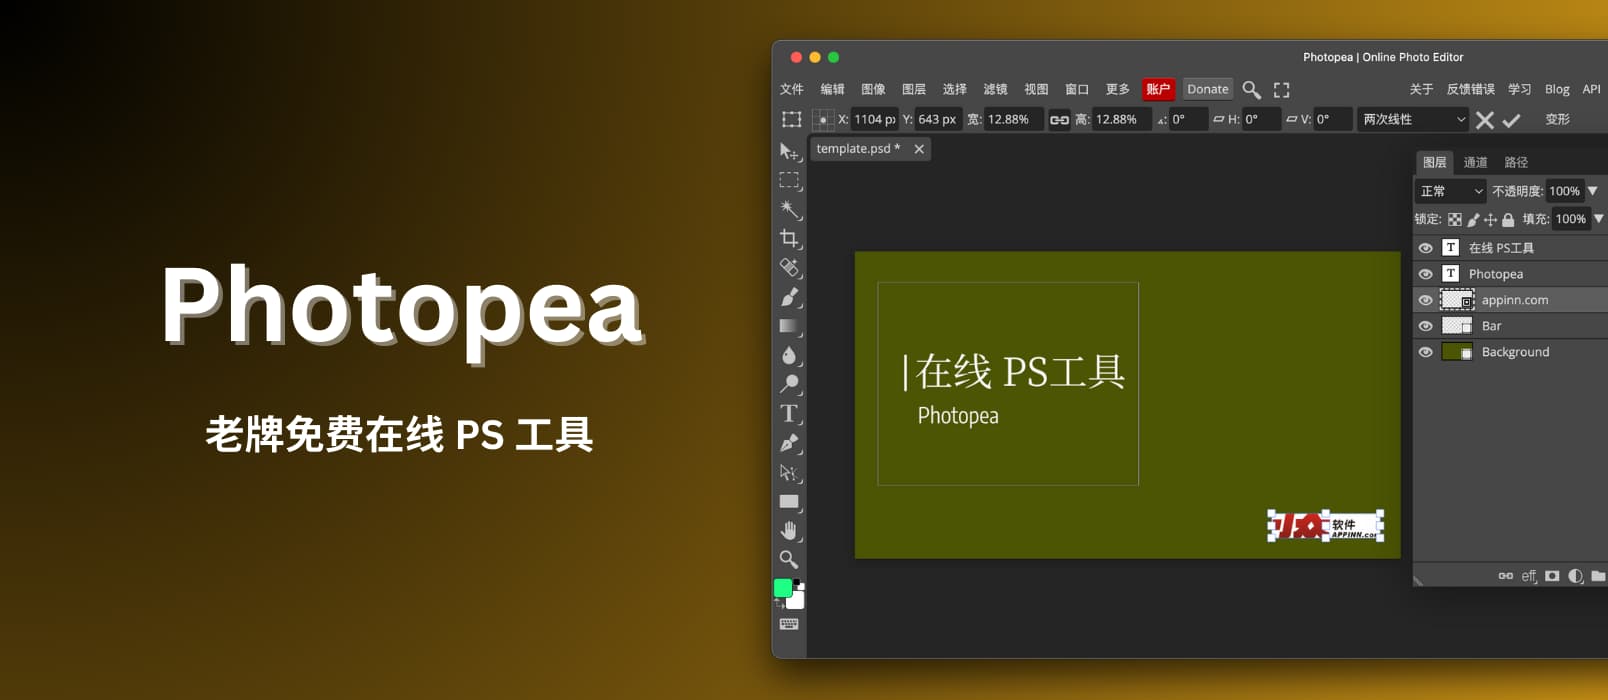 Photopea - 老牌免费在线 PS 工具，支持 PSD、AI 和 Sketch 等文件